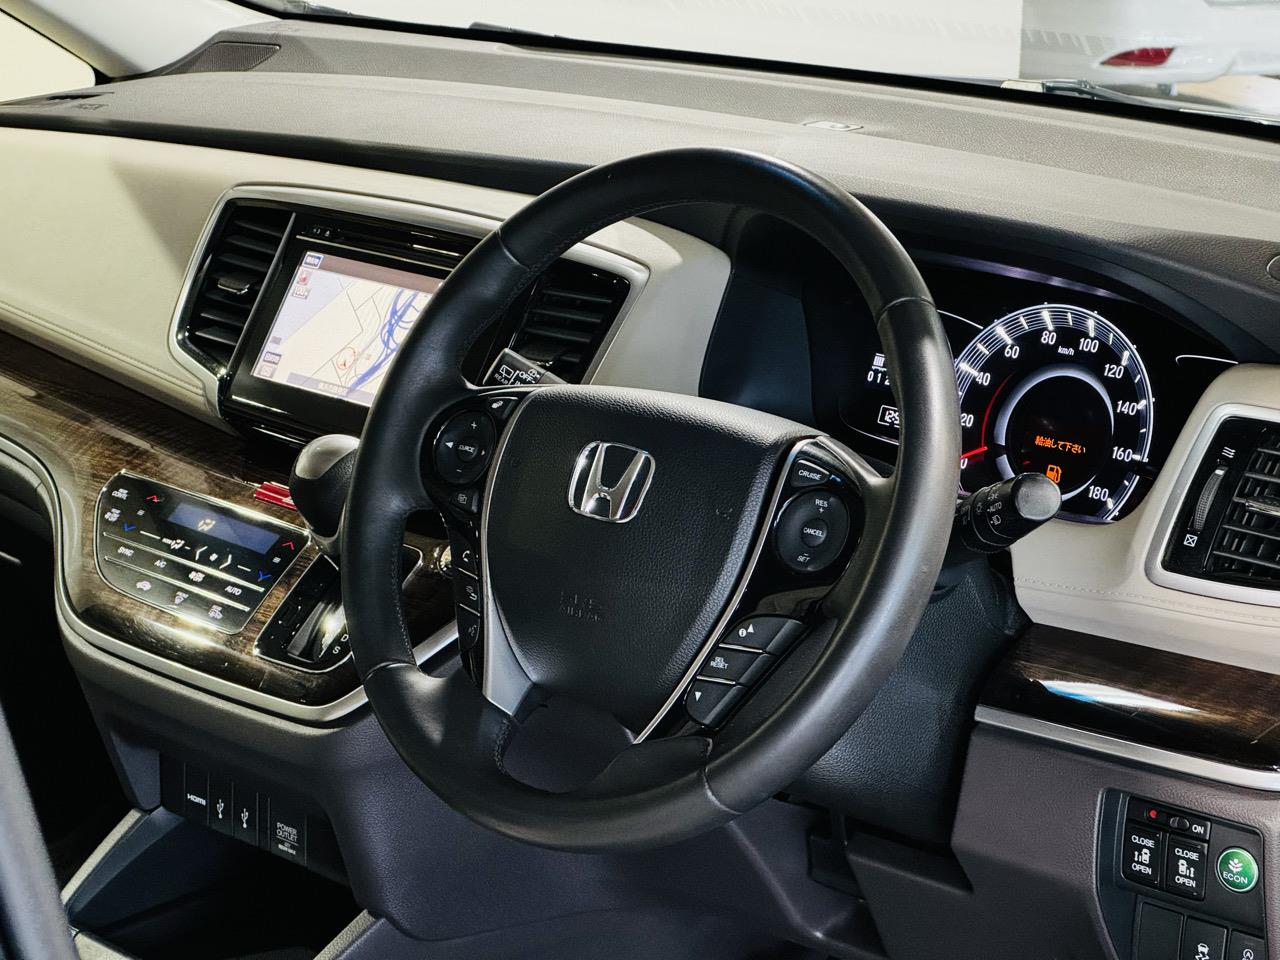 2013 Honda Odyssey